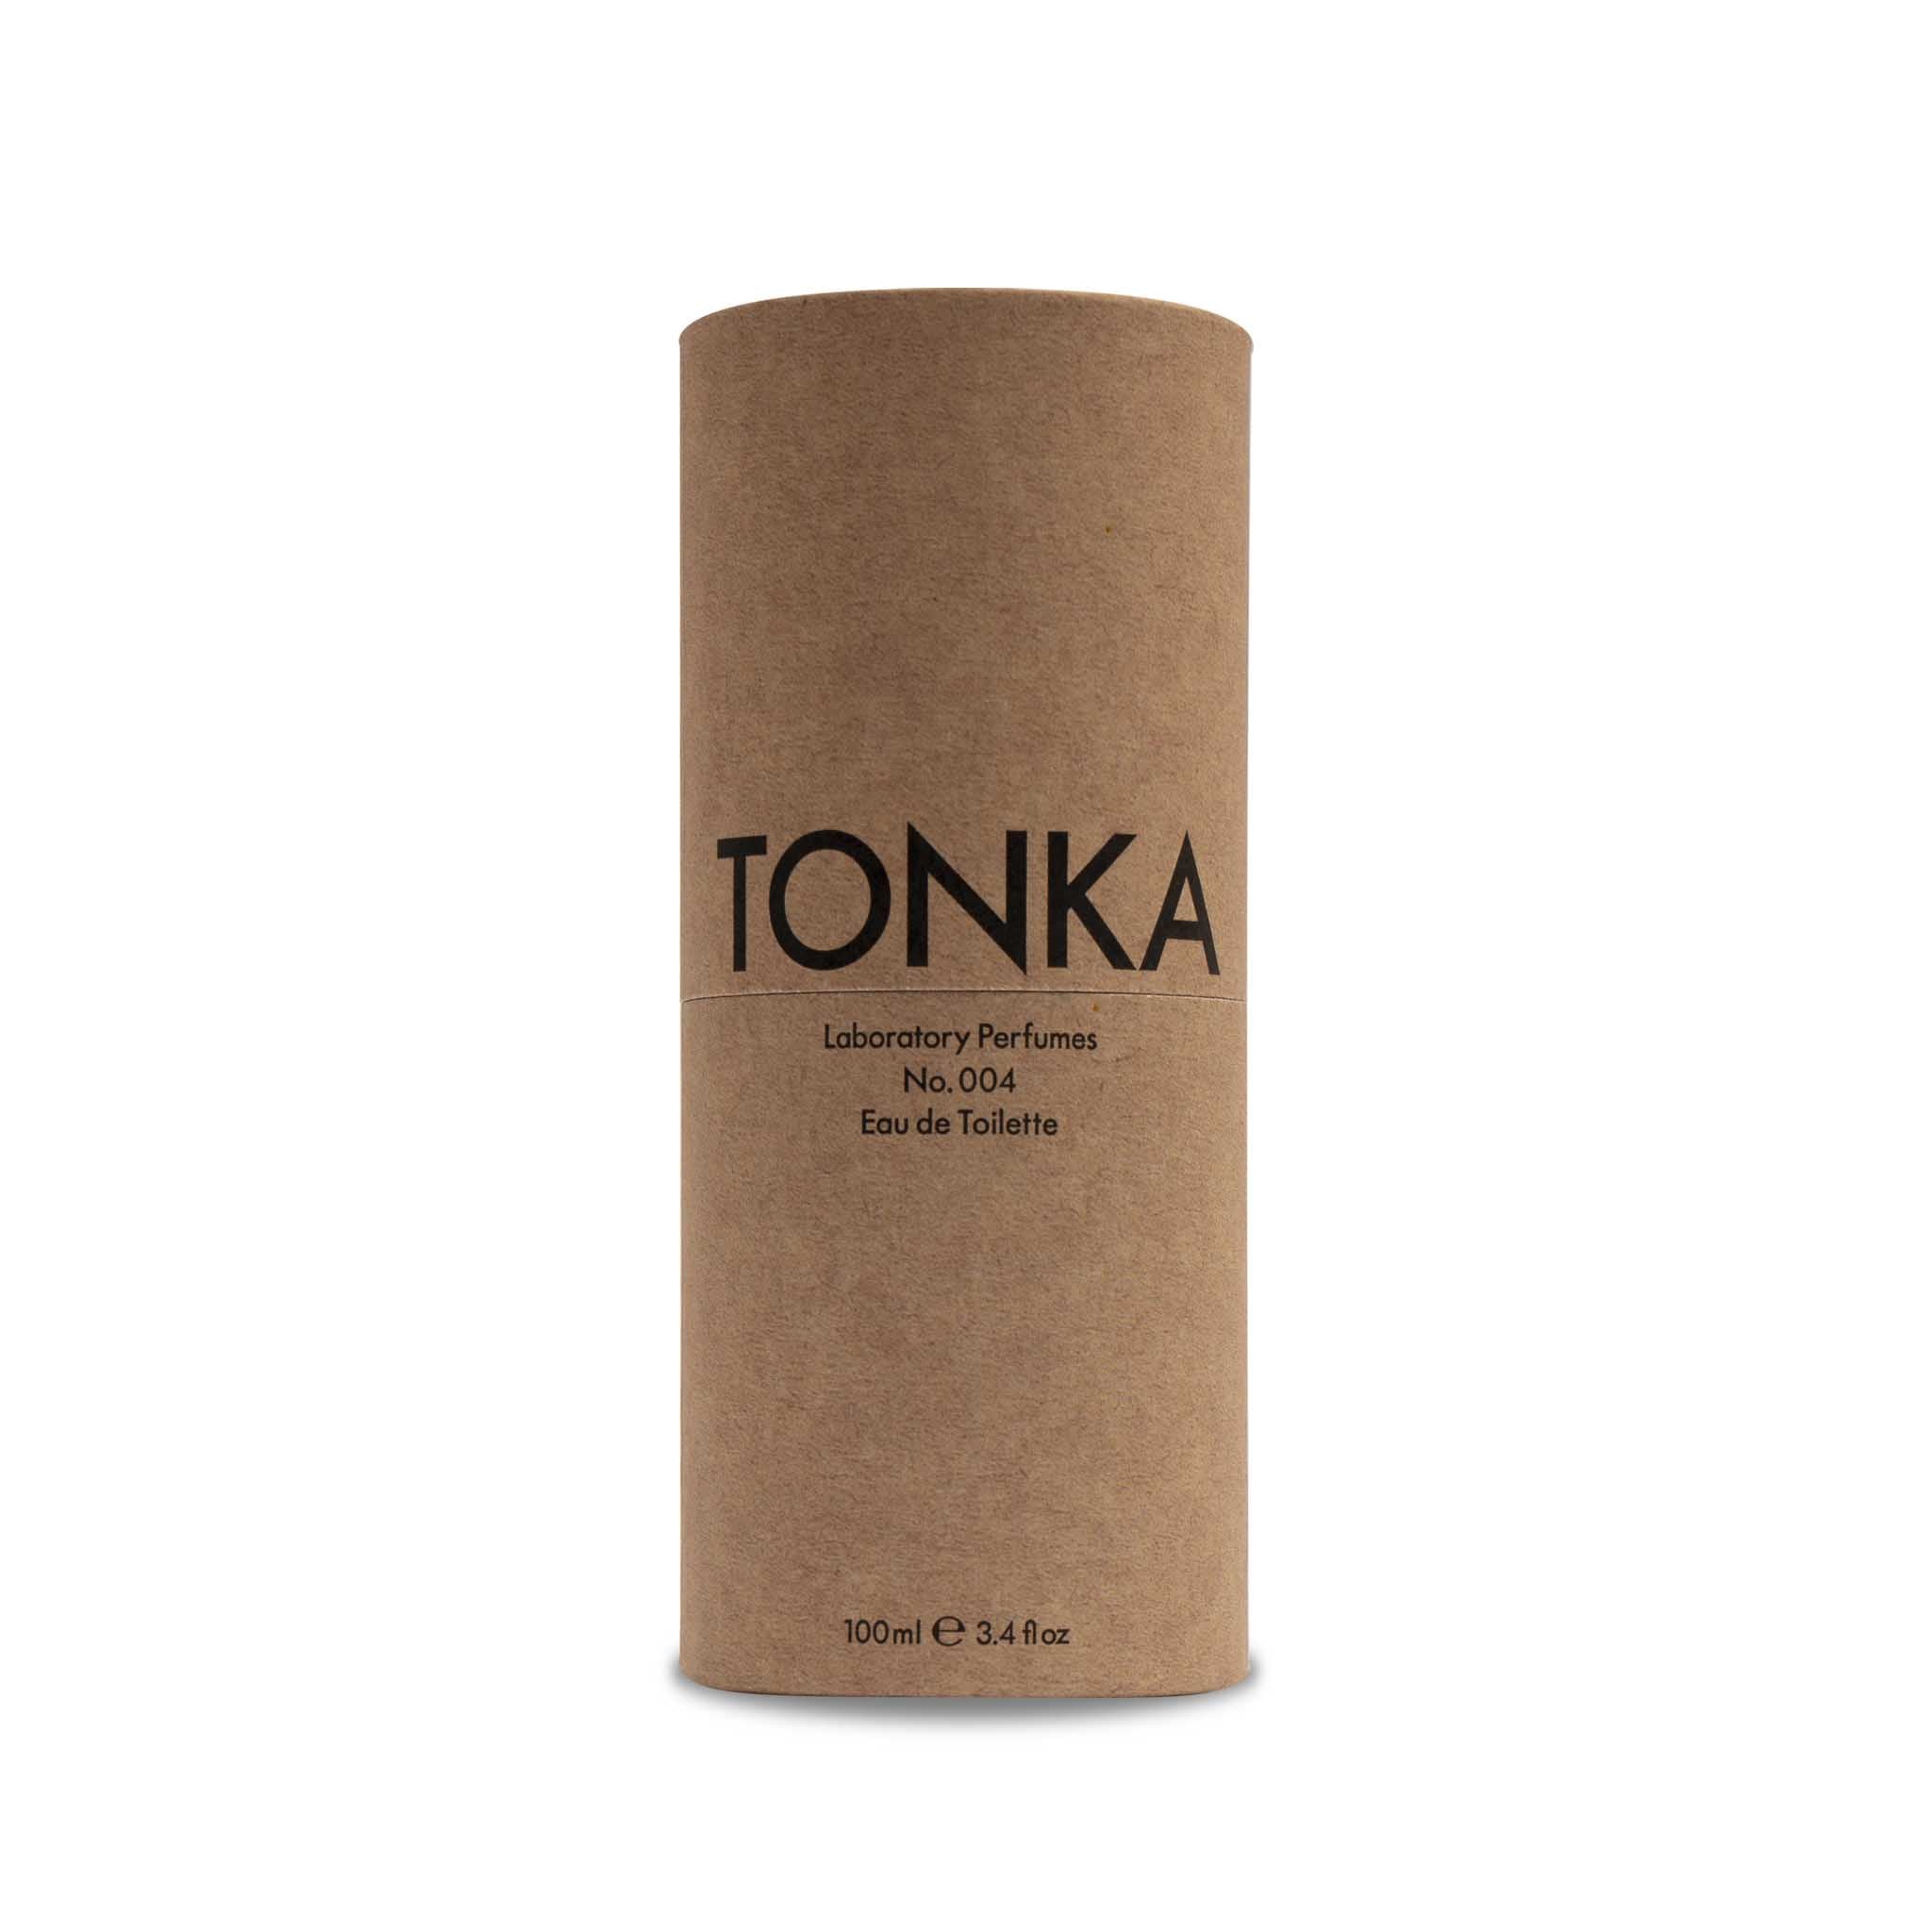 Tonka Eau De Toilette Laboratory Perfumes